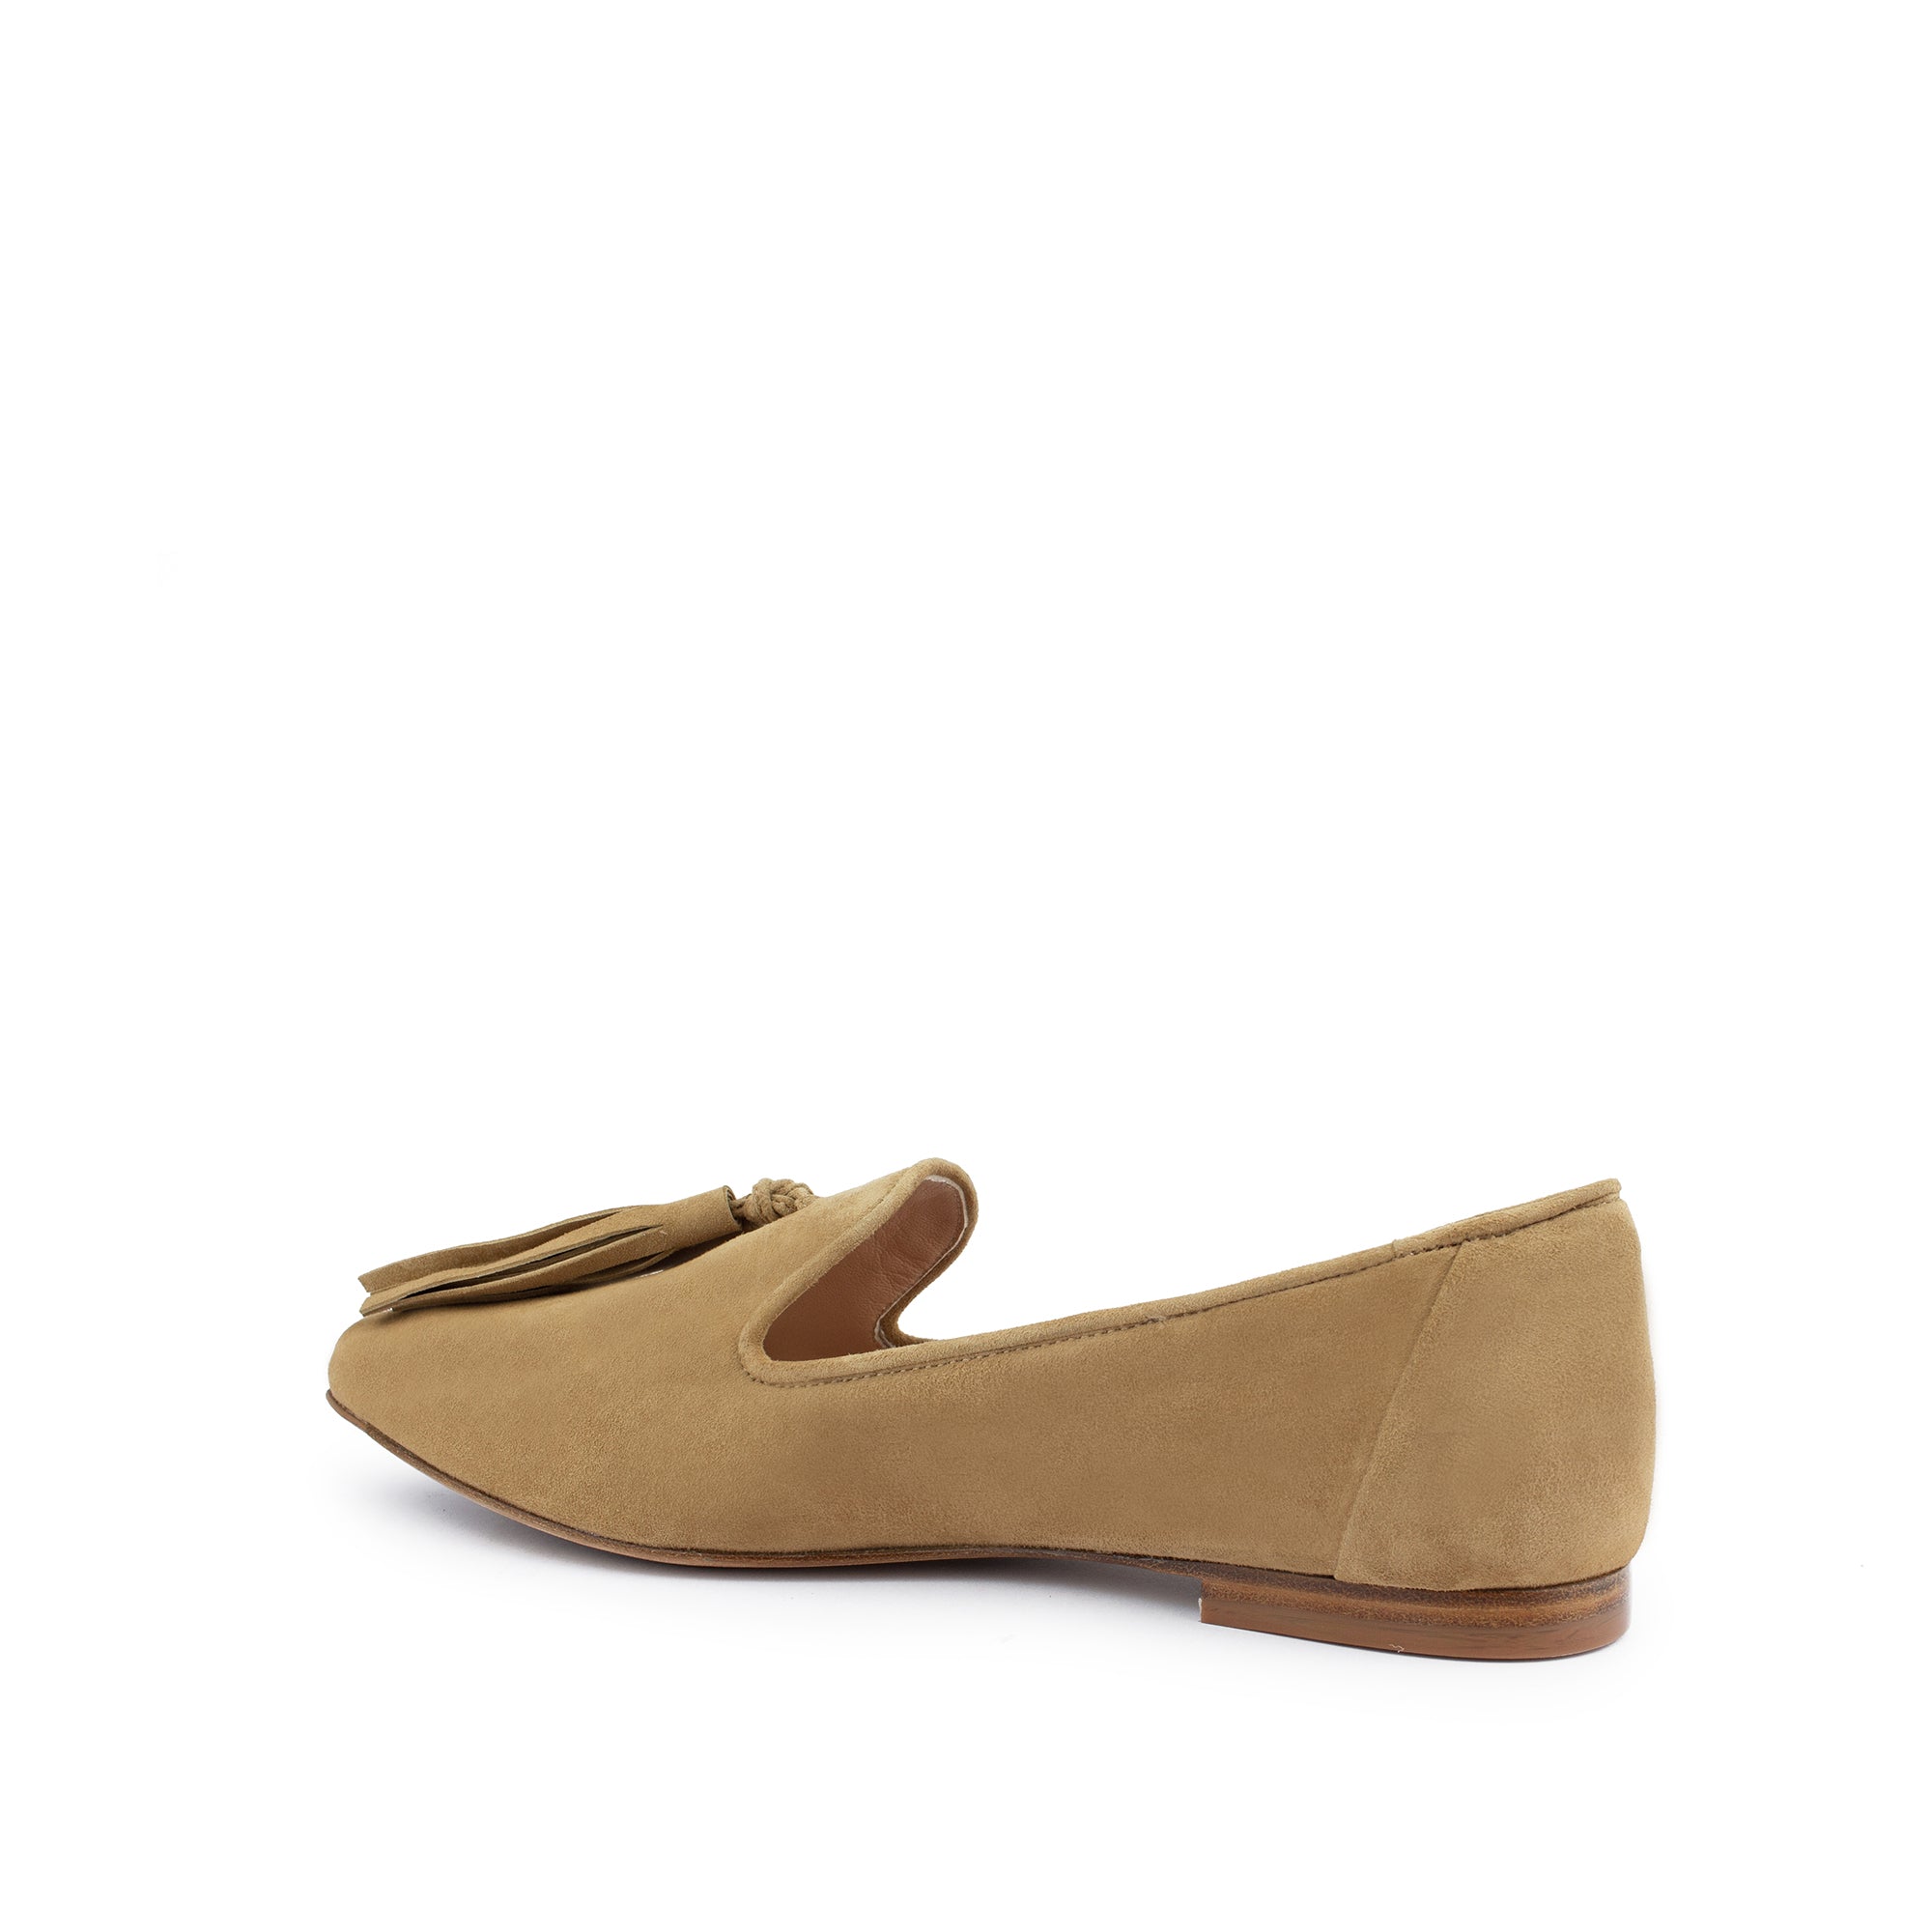 Trino Loafers | Women’s Loafers | Italian Suede Shoes - Italeau Nuova